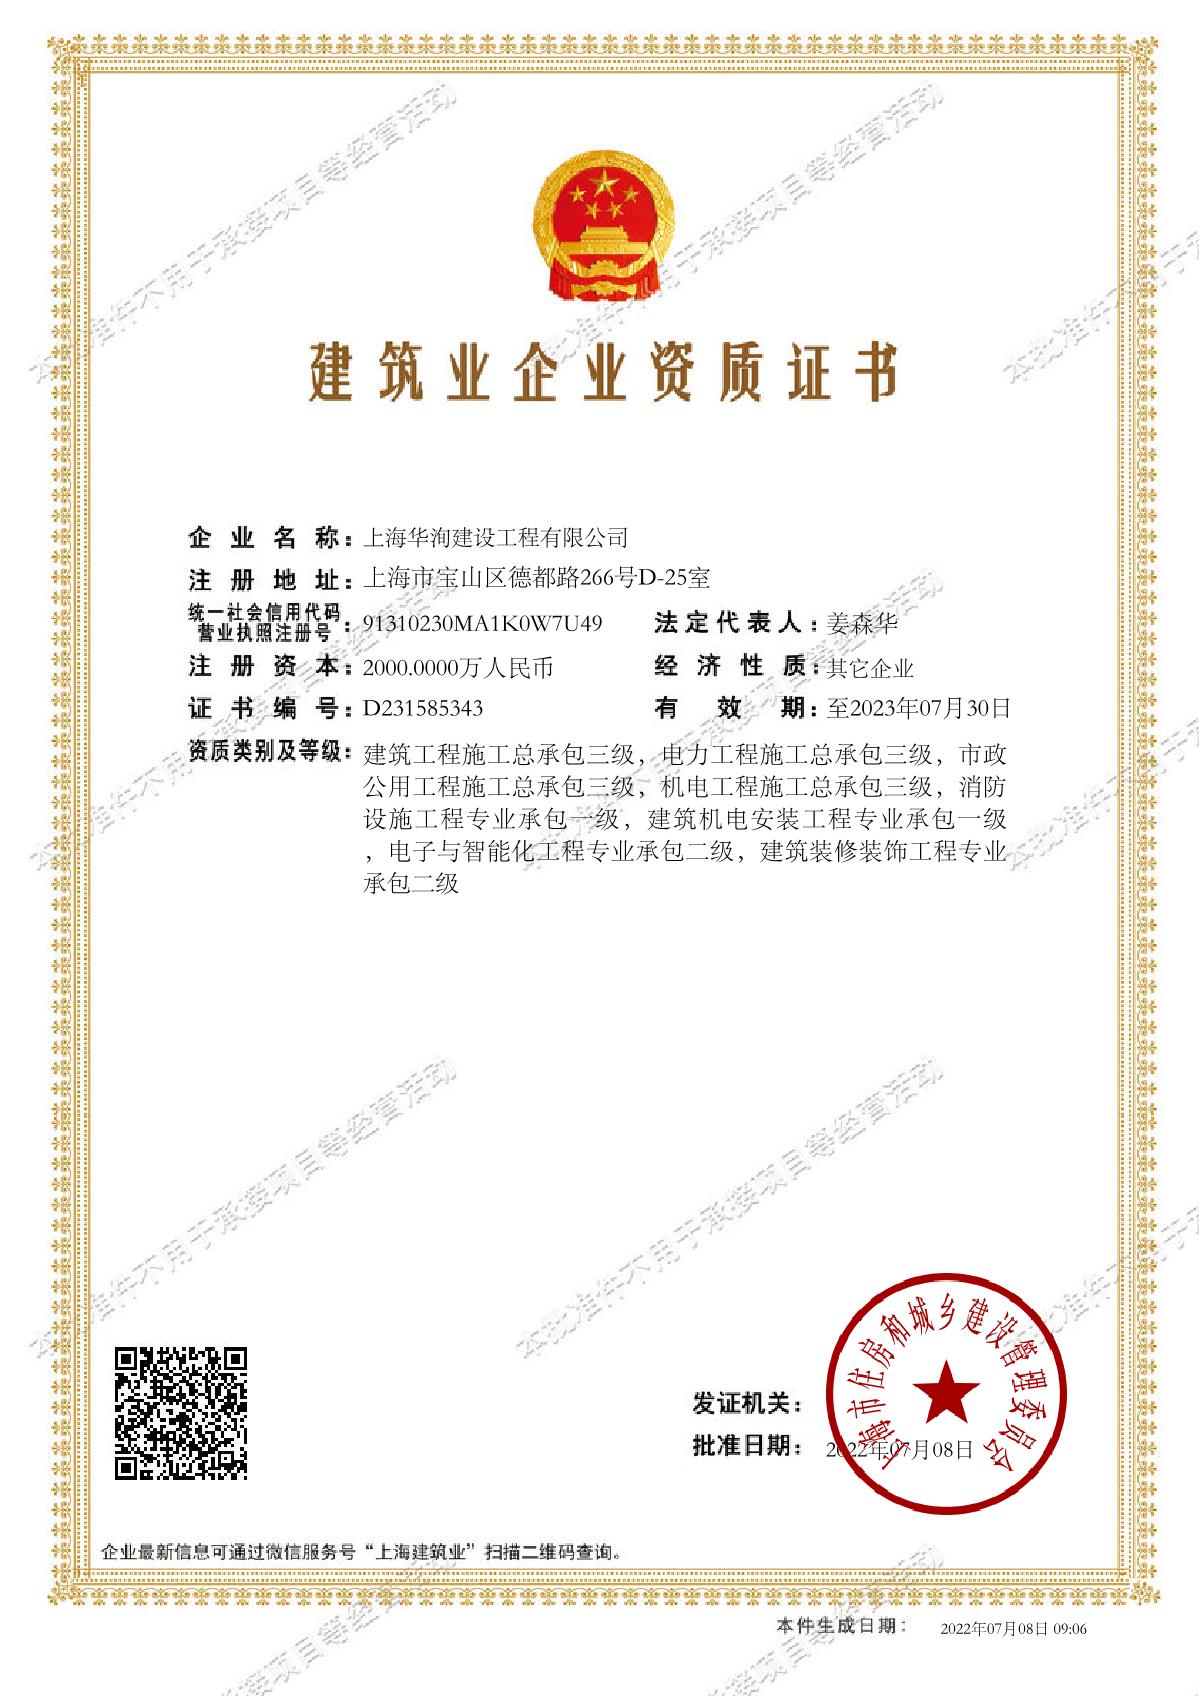 上海华洵建设工程有限公司建筑业企业资质证书-20220708090607753_1.JPG